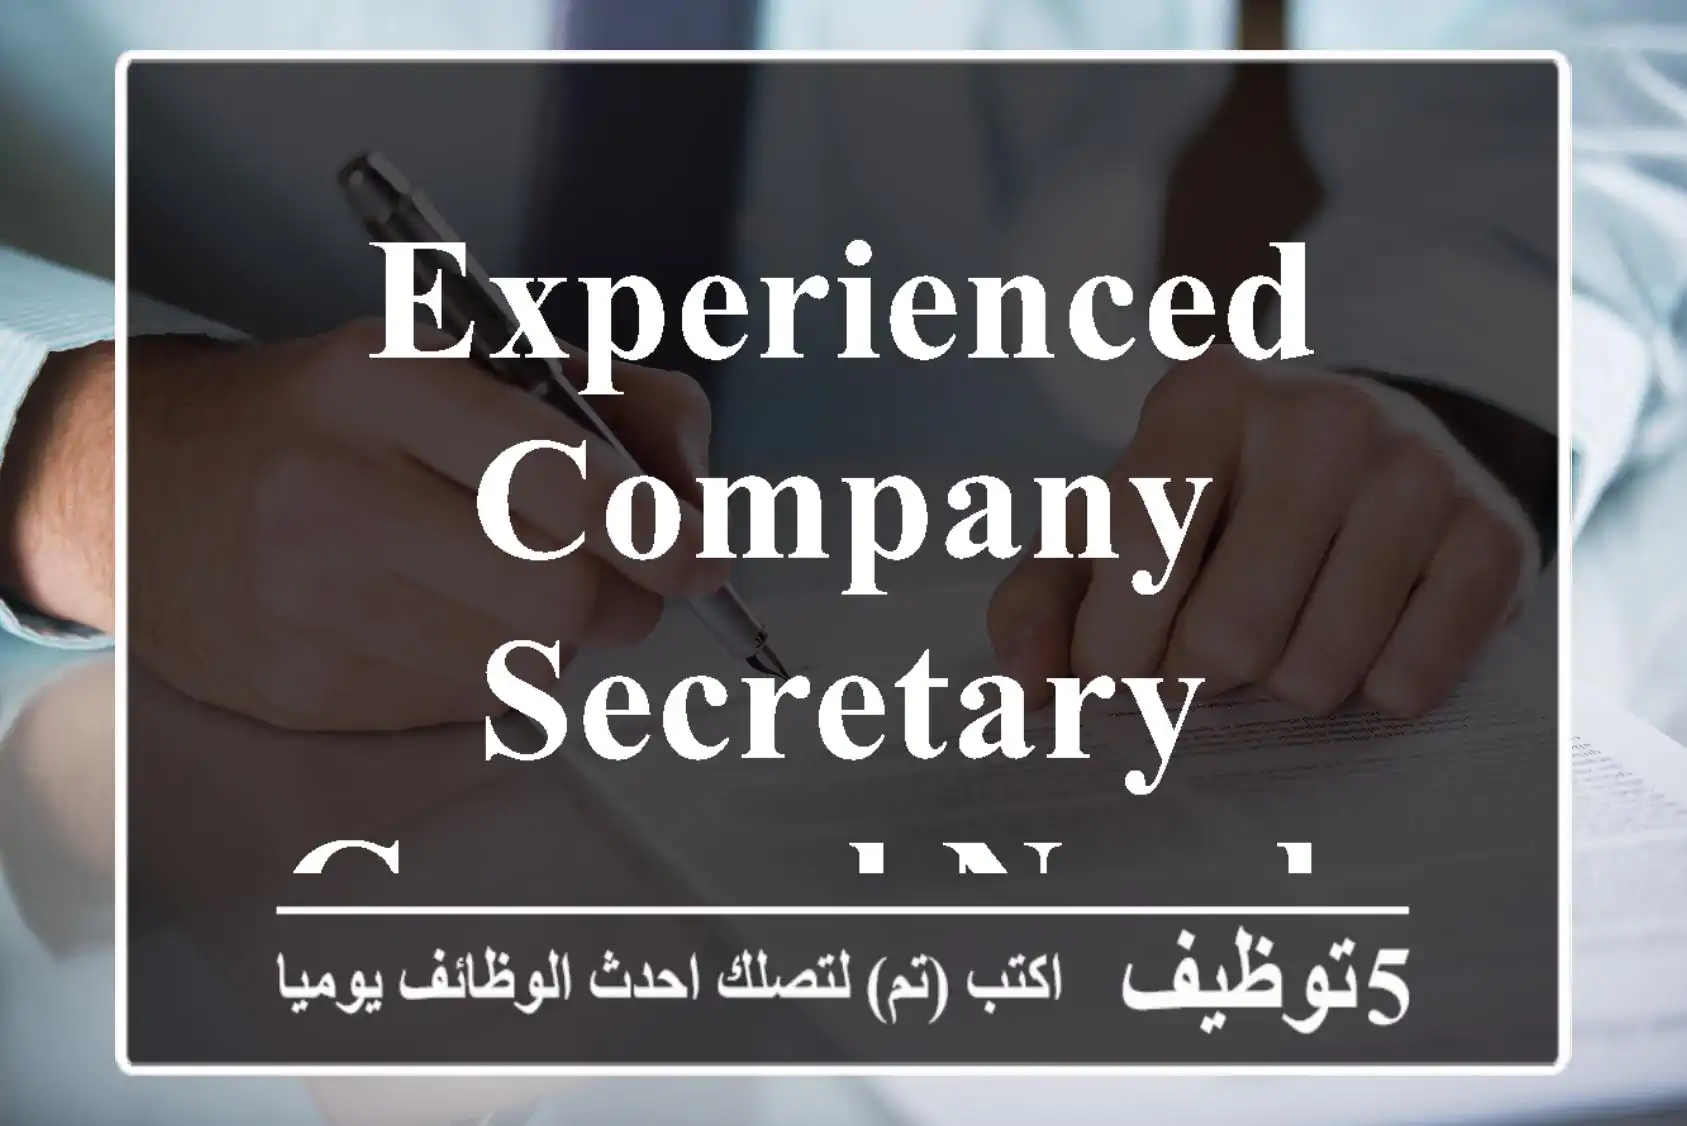 Experienced company secretary general needed